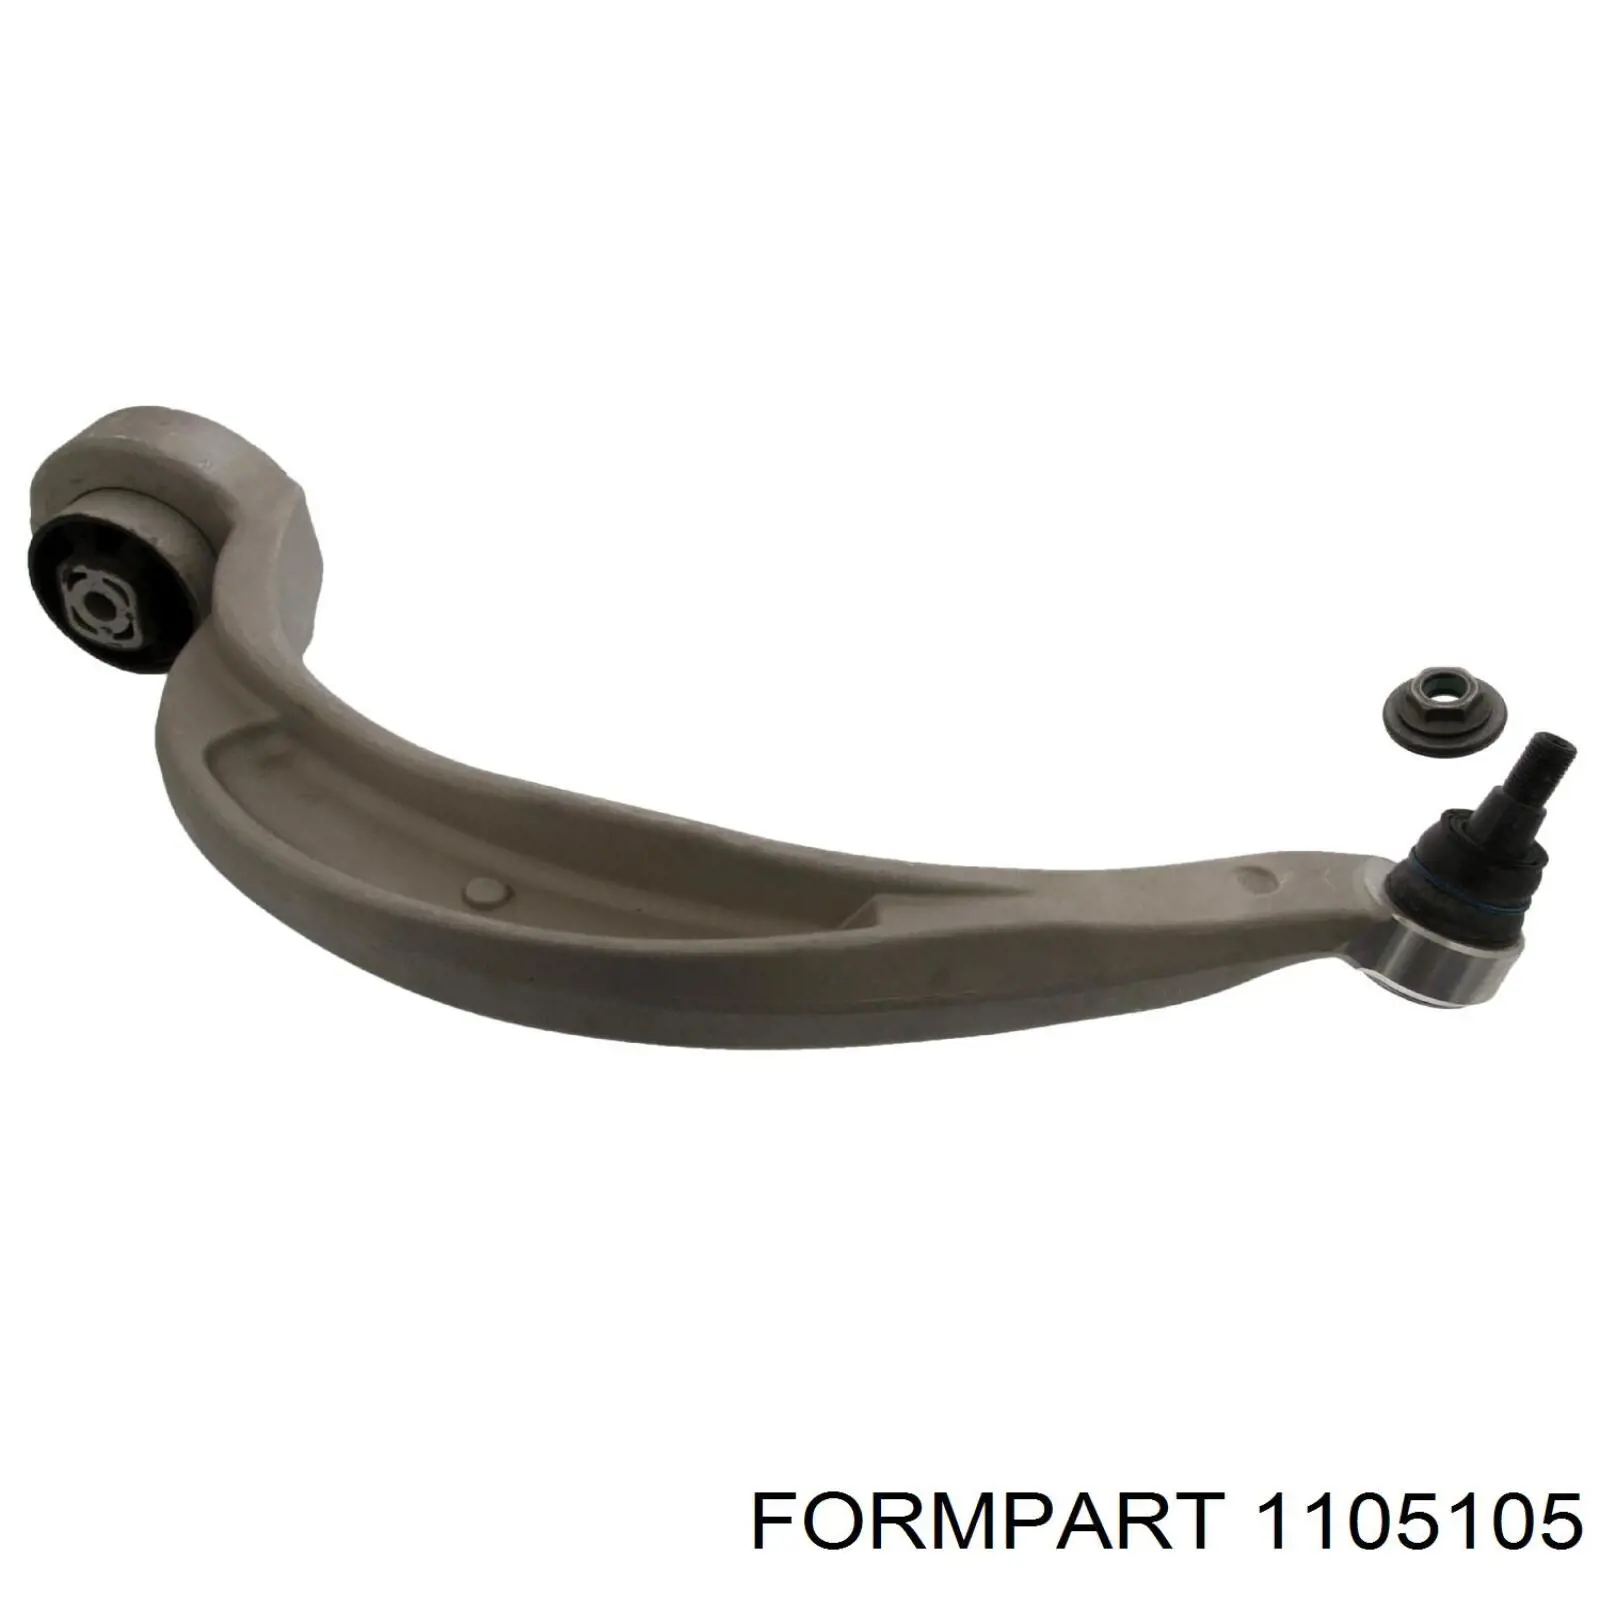 1105105 Formpart/Otoform braço oscilante inferior direito de suspensão dianteira